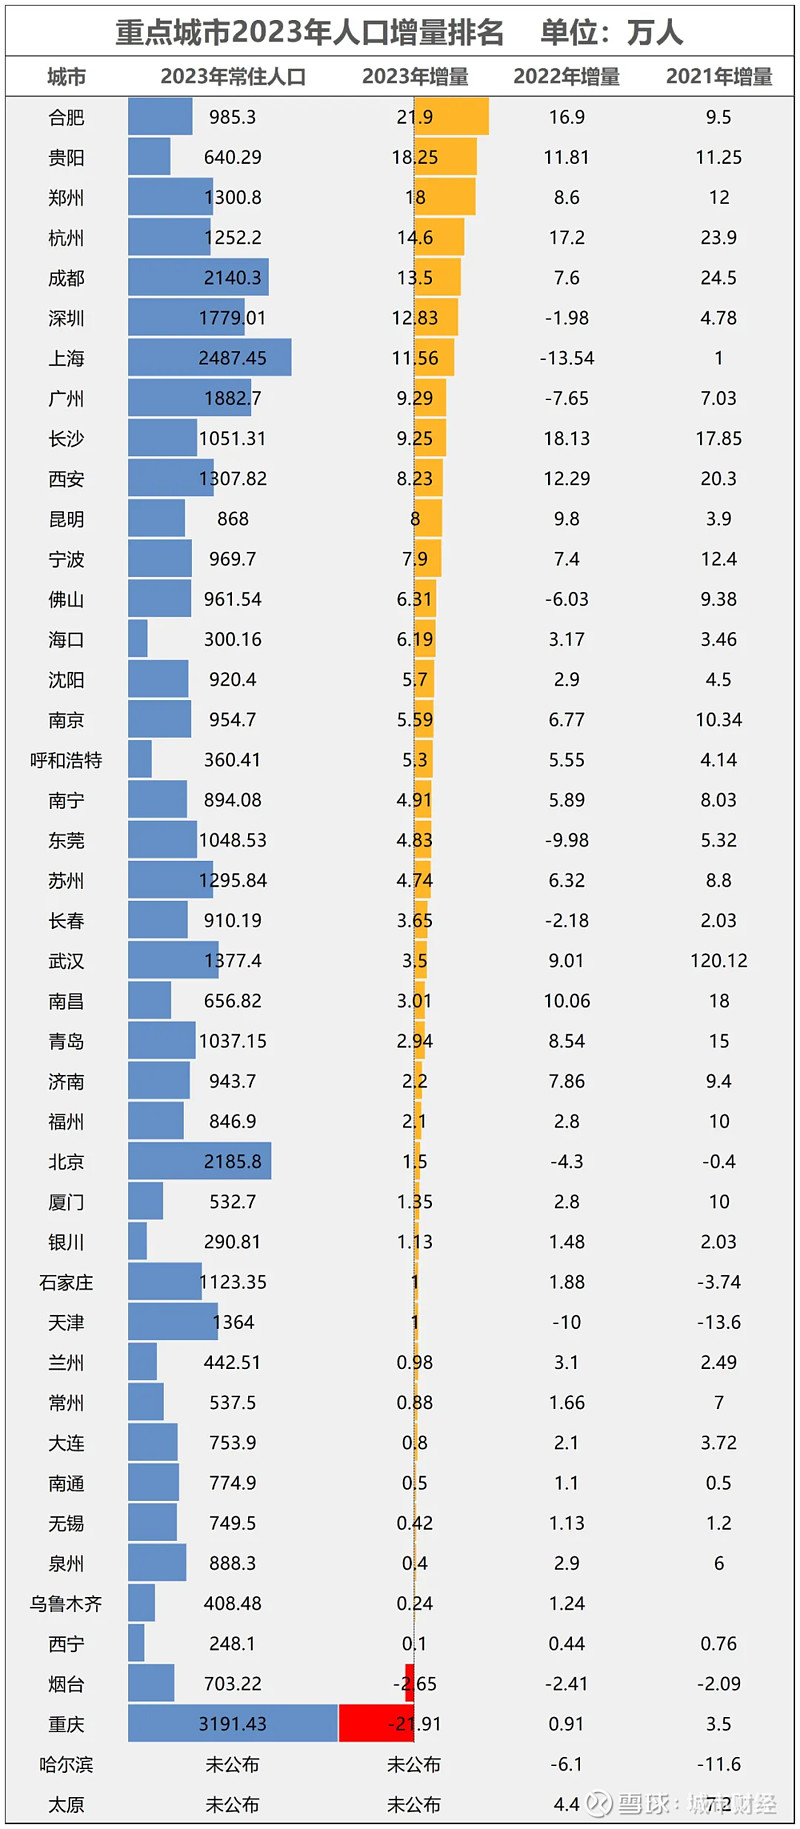 2020年中国城市gdp排名图片